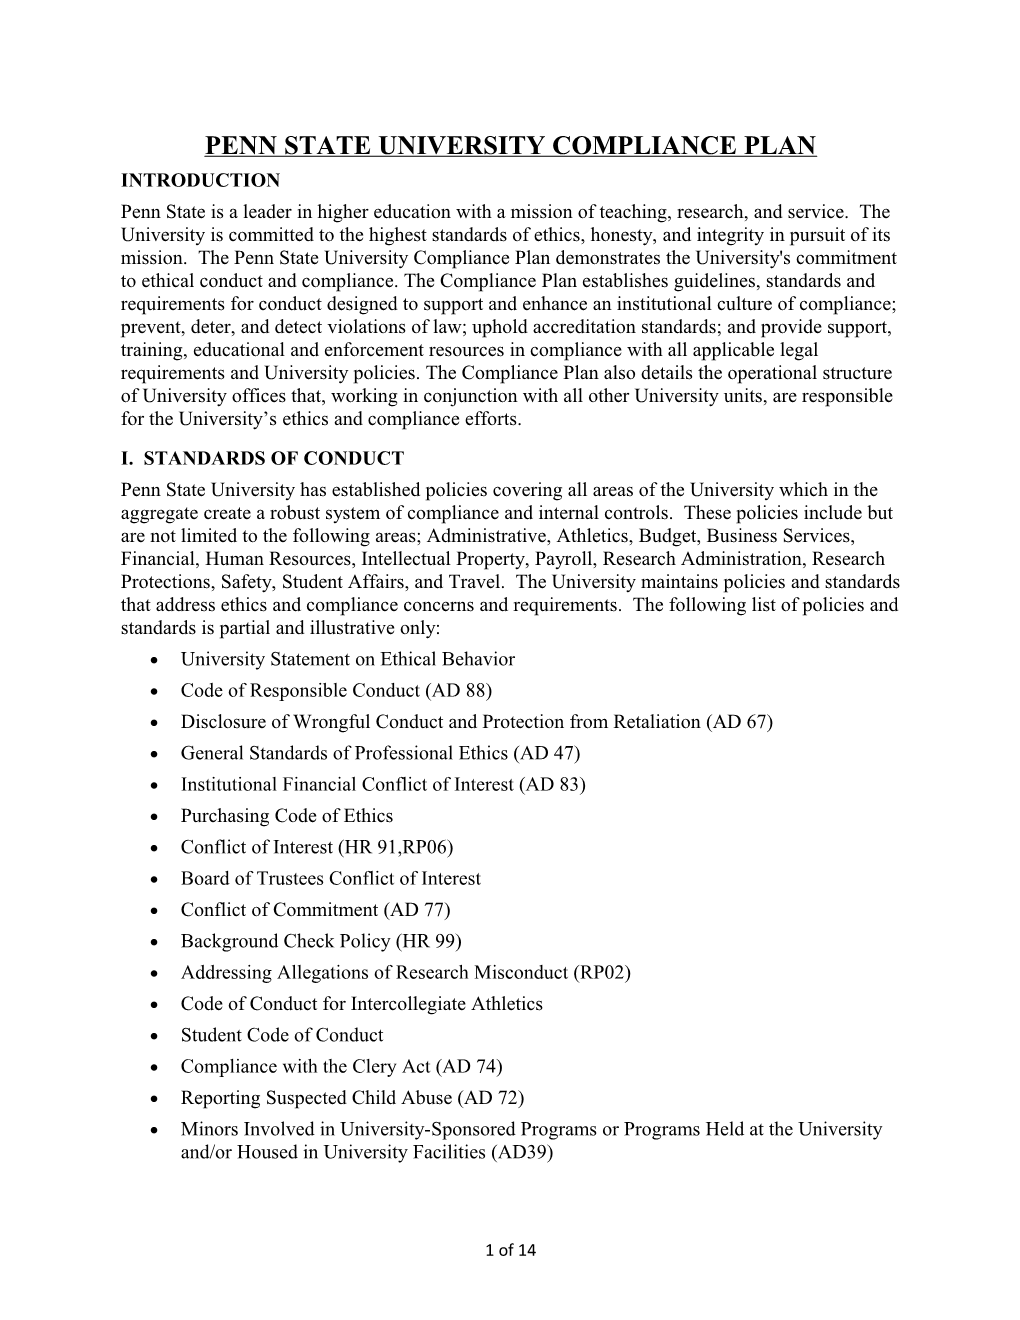 Penn State University Compliance Plan